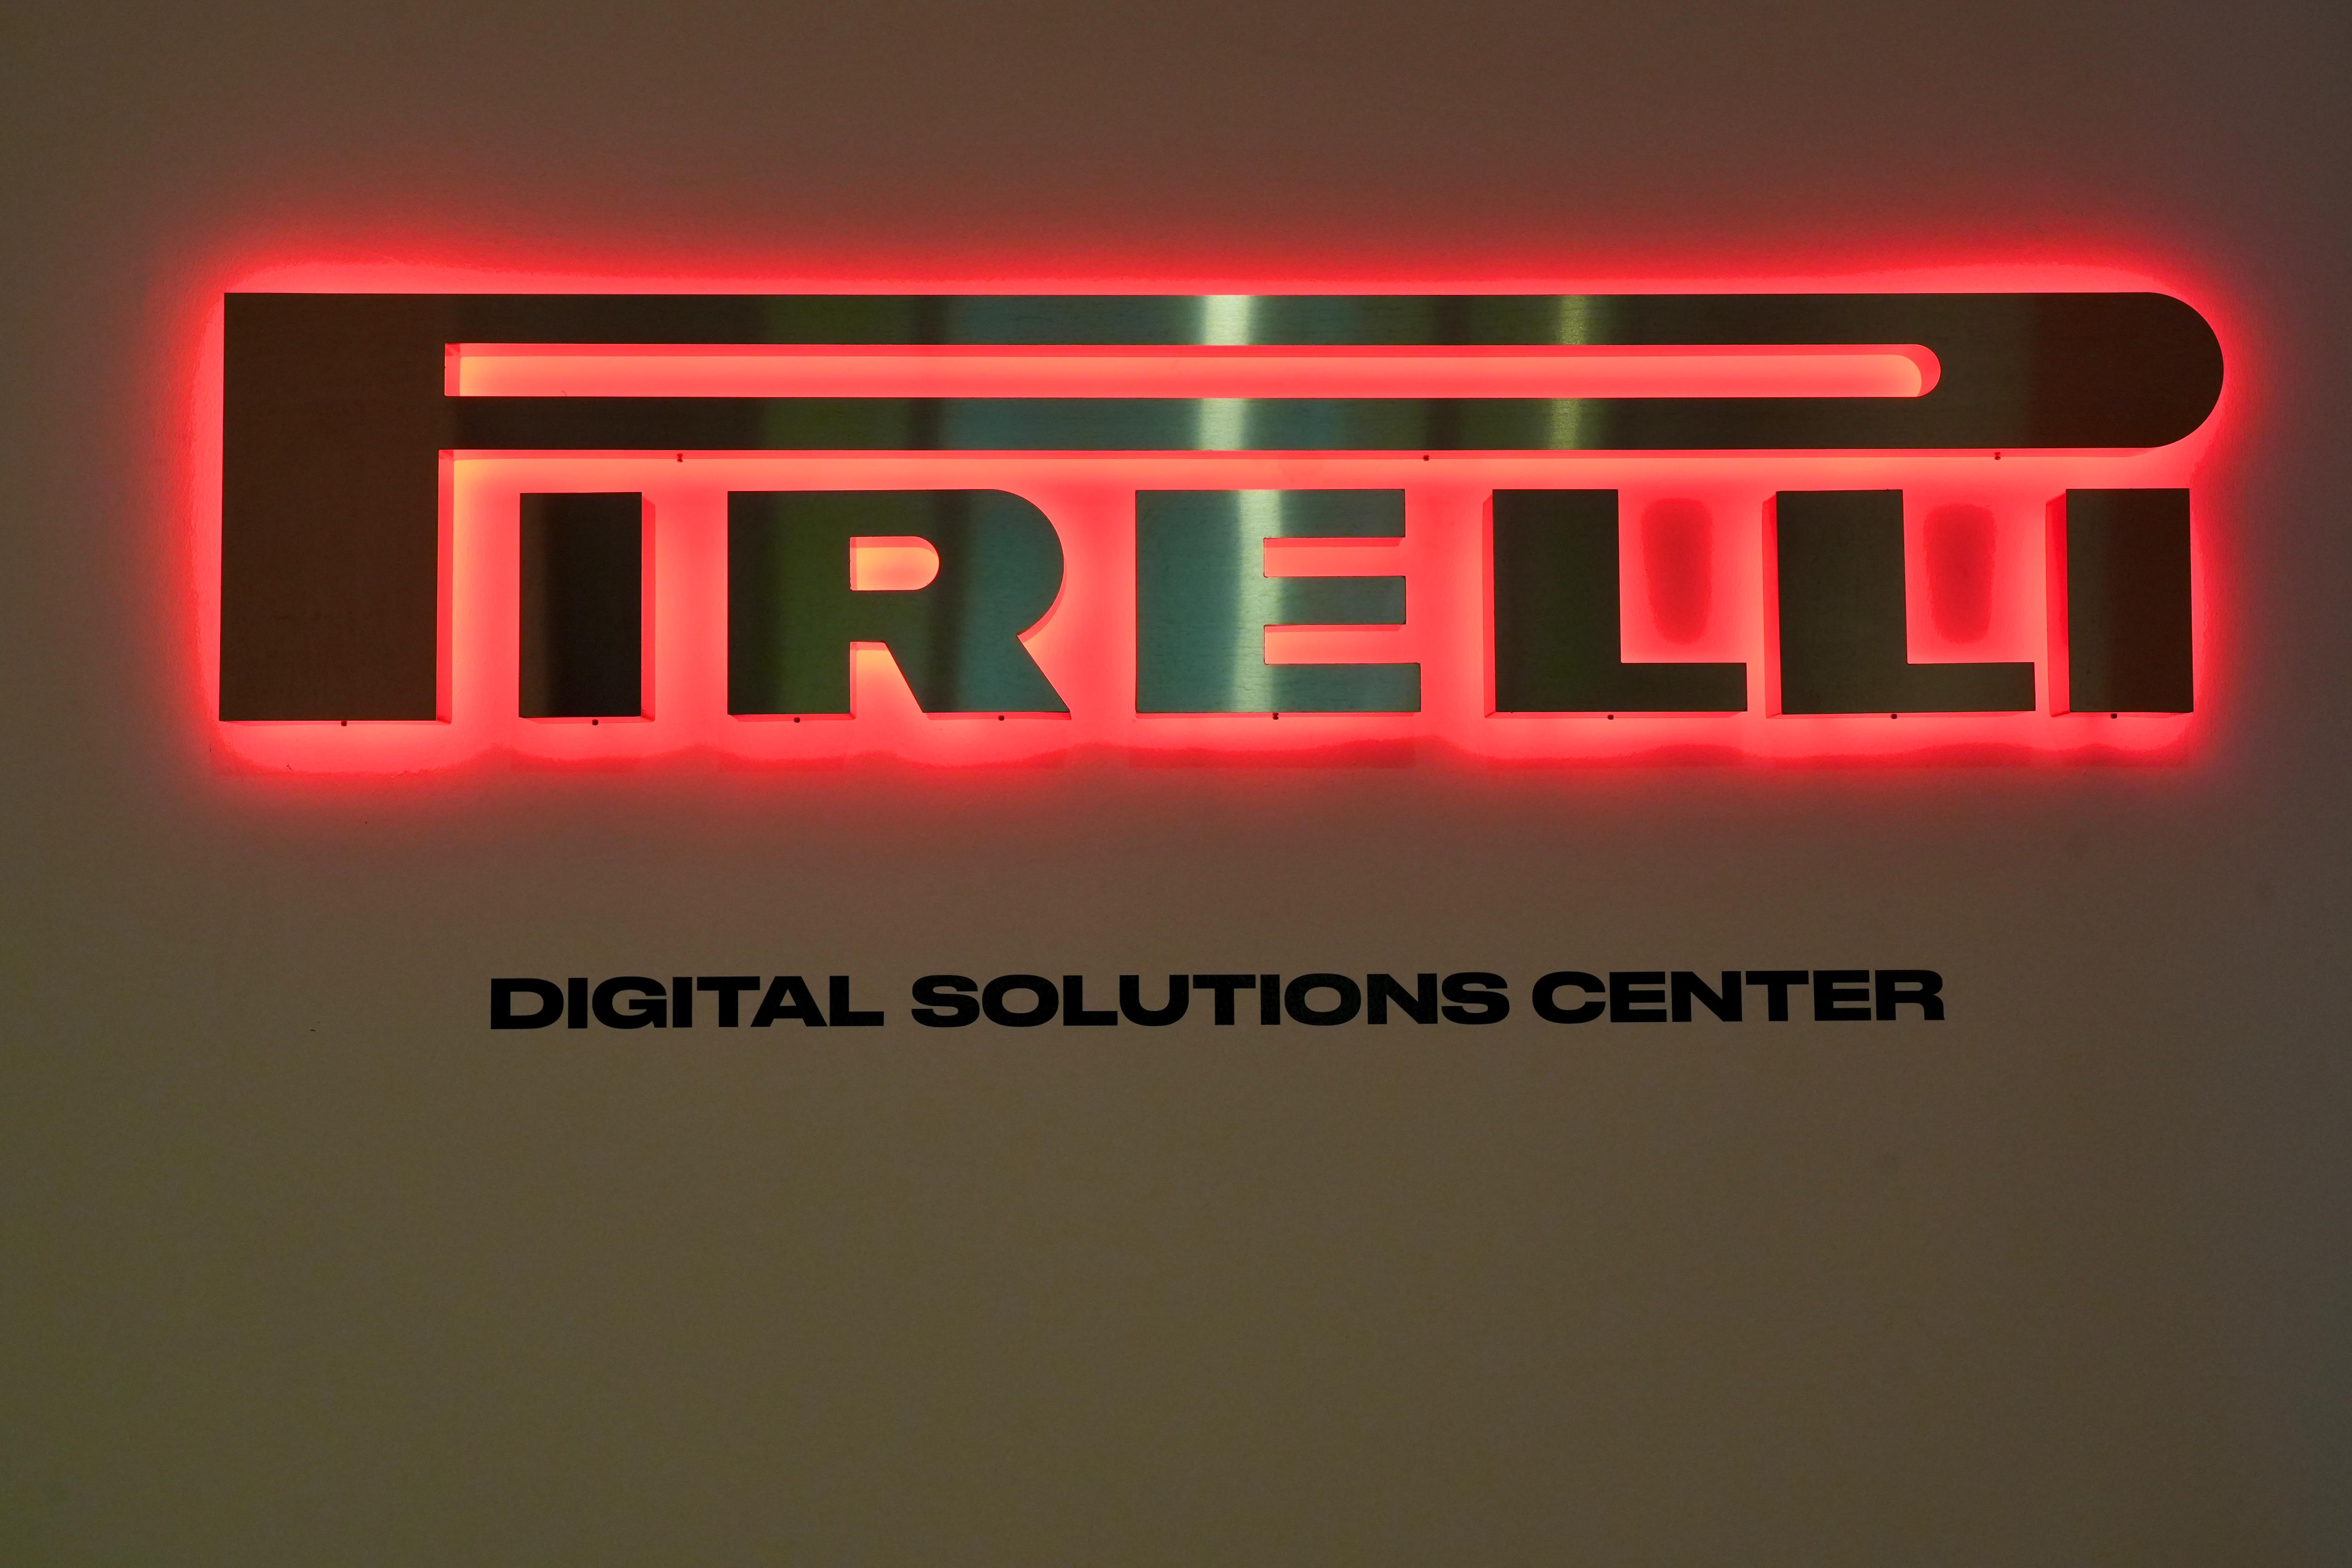 Galleria Pirelli: si rafforza a Bari, nel 2025 i dipendenti del Digital Solutions Center saliranno a 80 dai 50 previsti inizialmente - Diapositiva 2 di 13